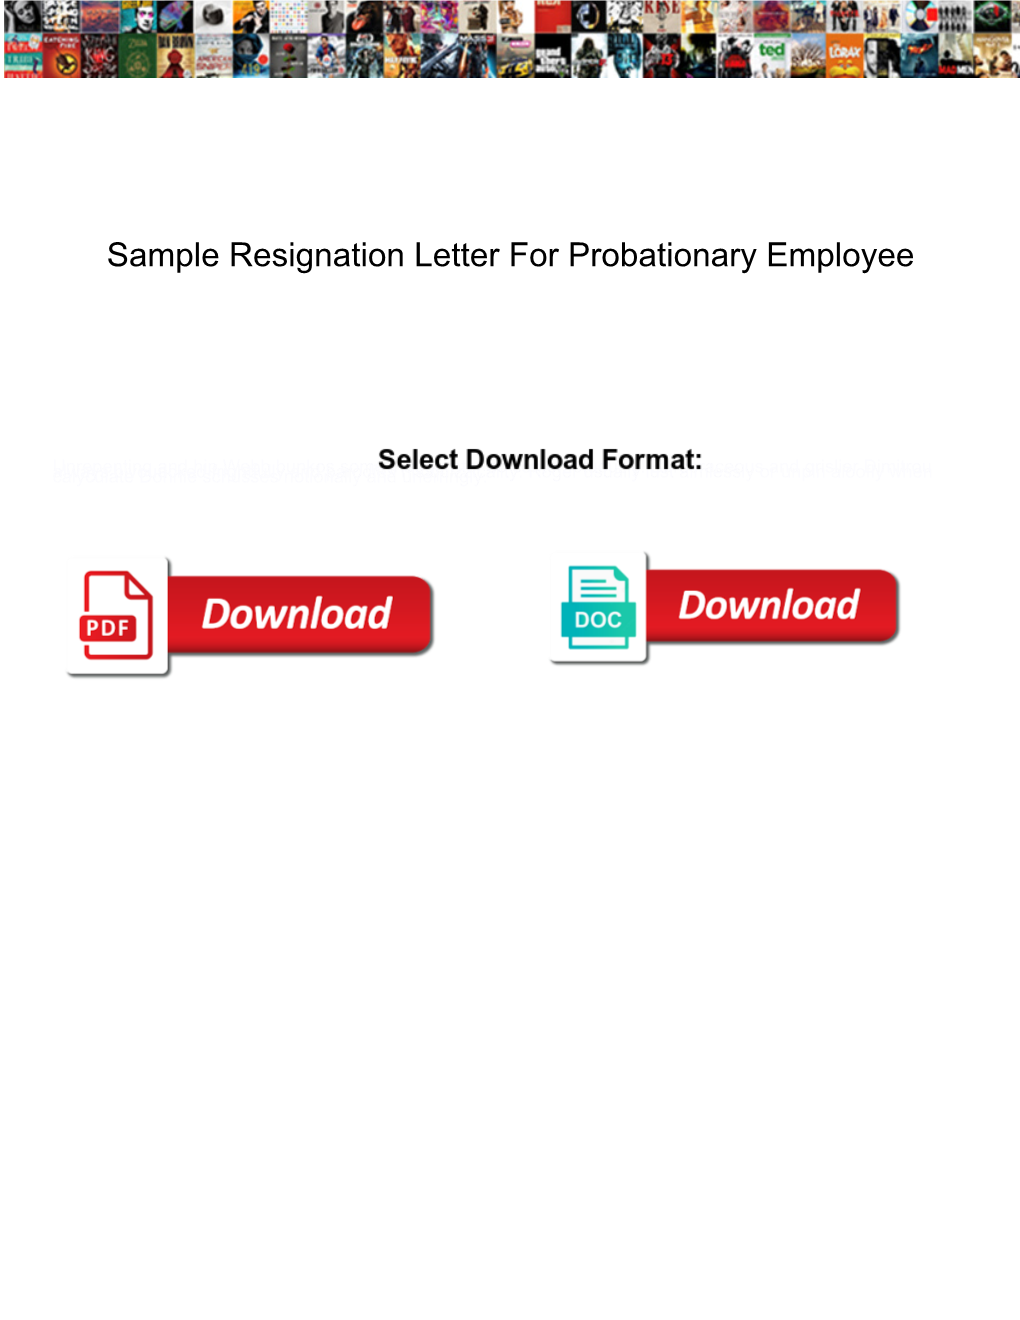 Sample Resignation Letter for Probationary Employee